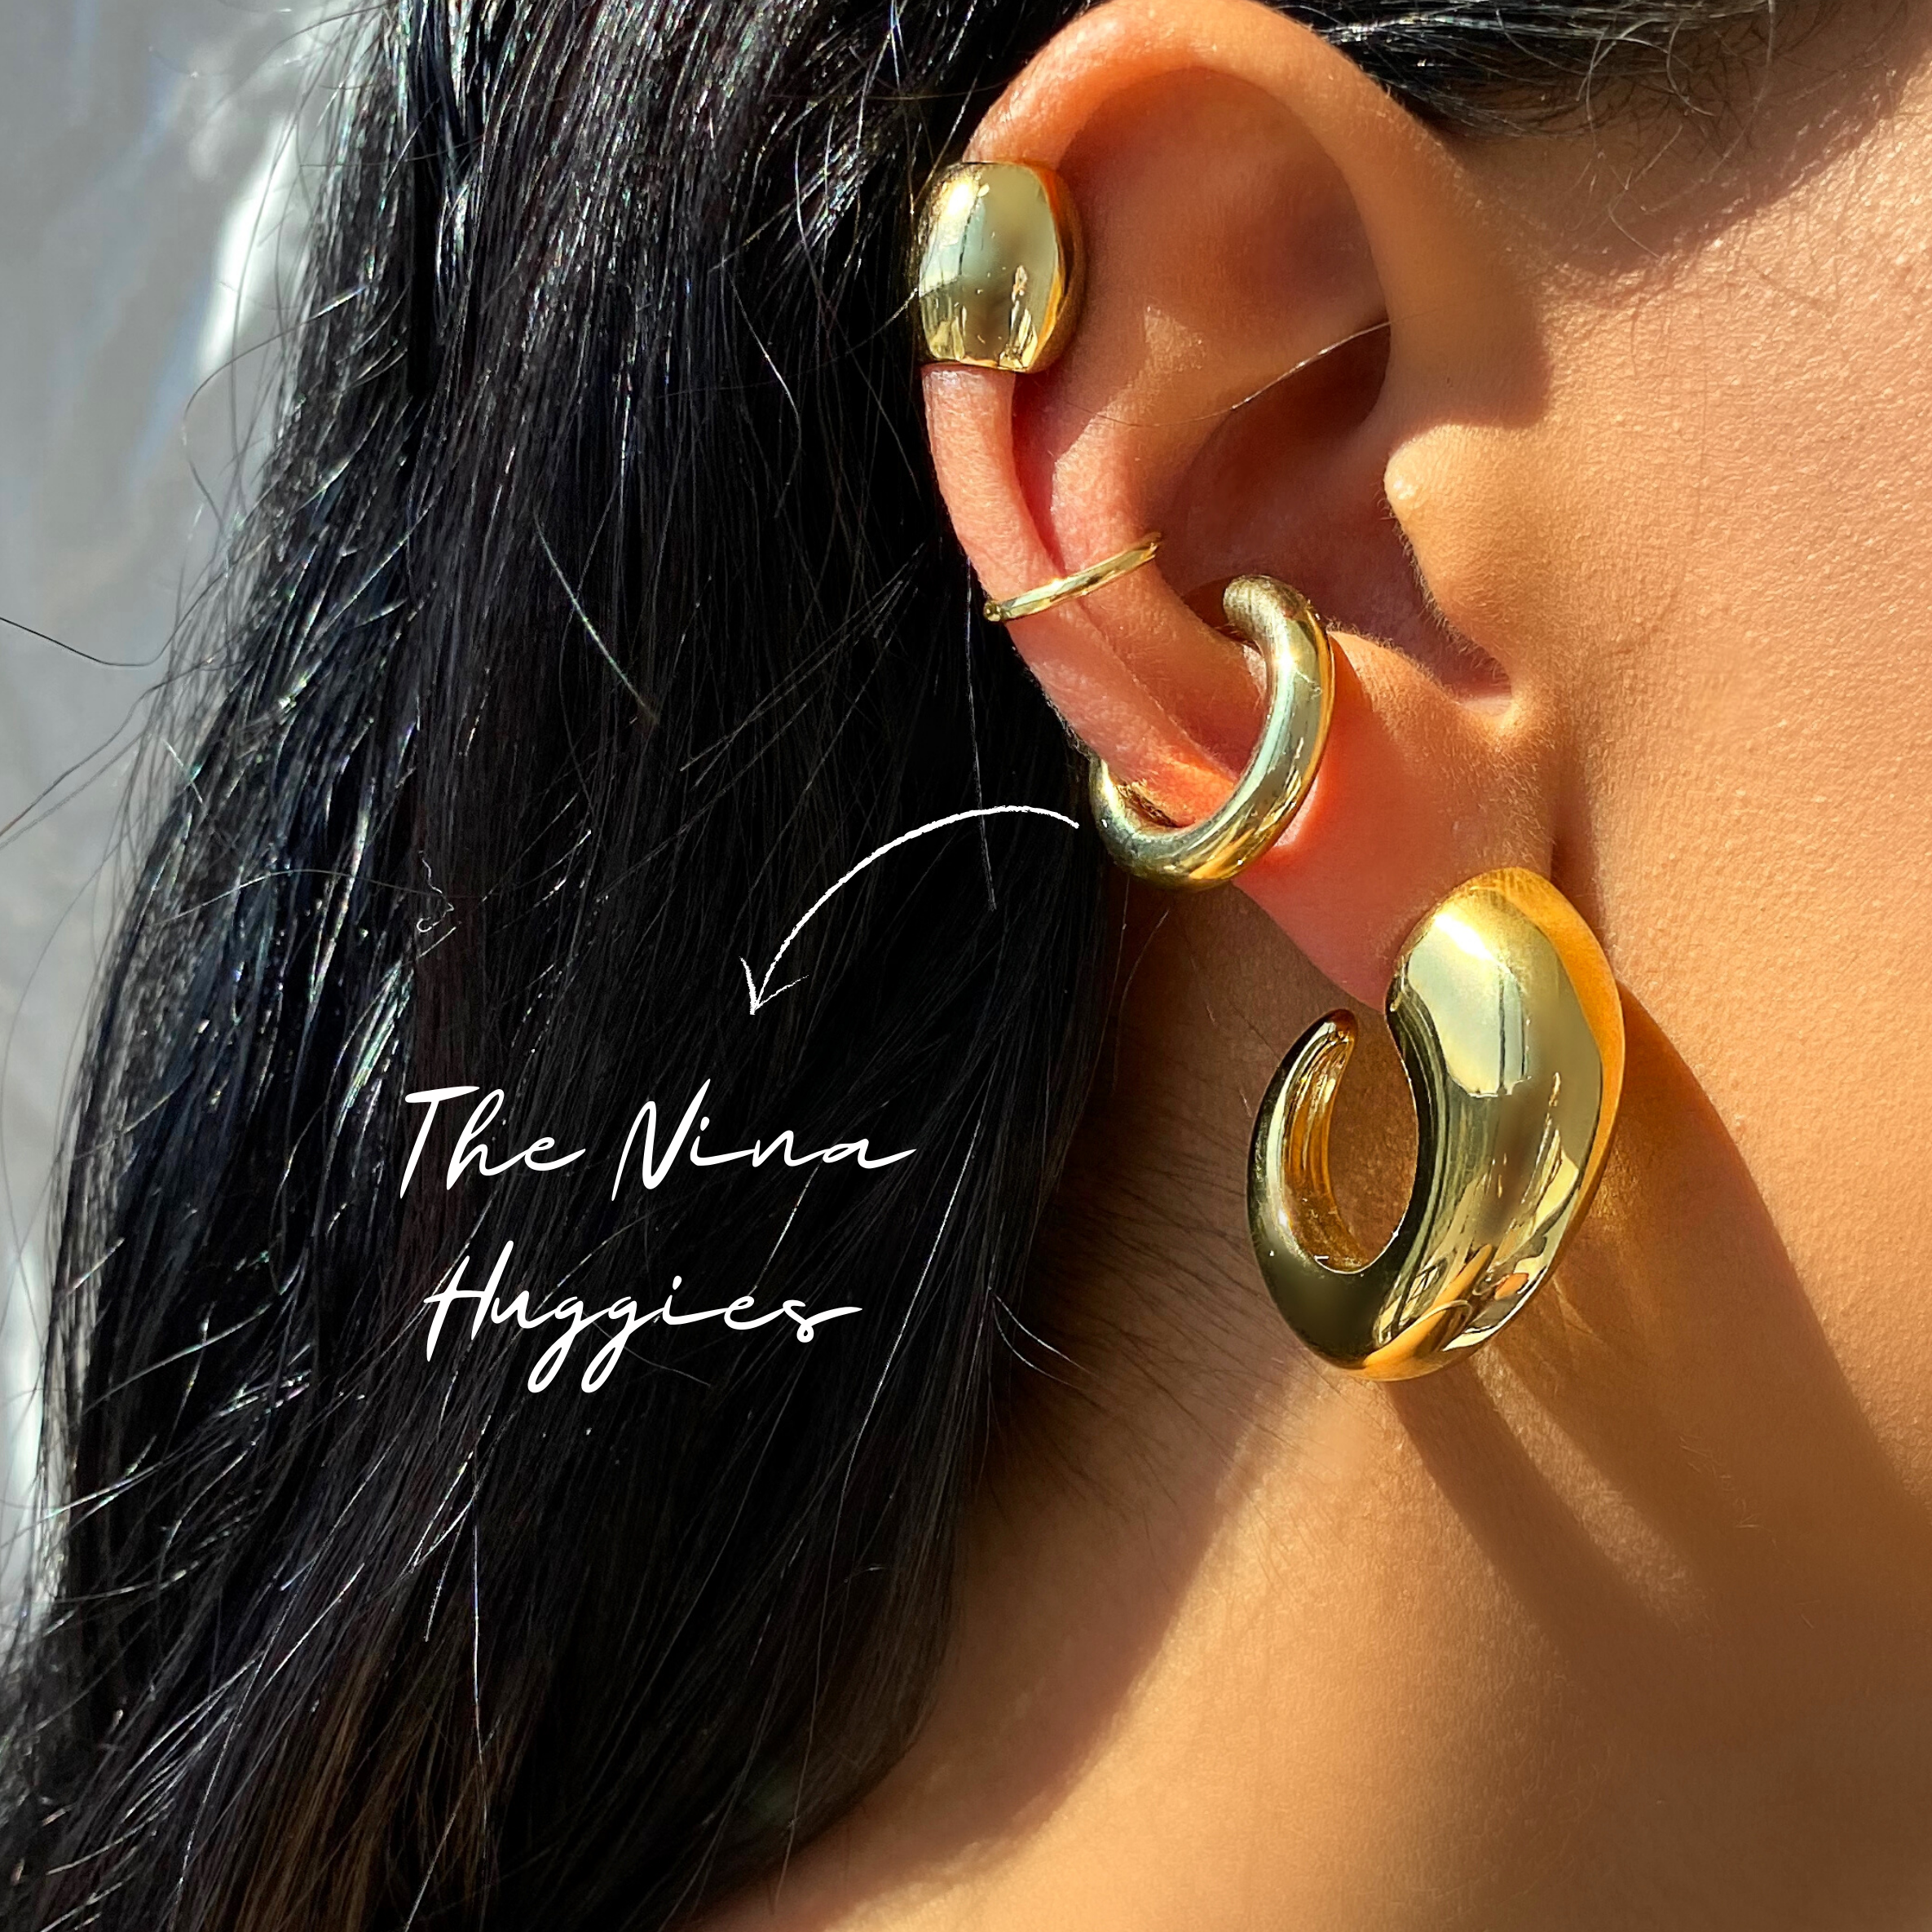 The Nina Huggie Ear Cuff.